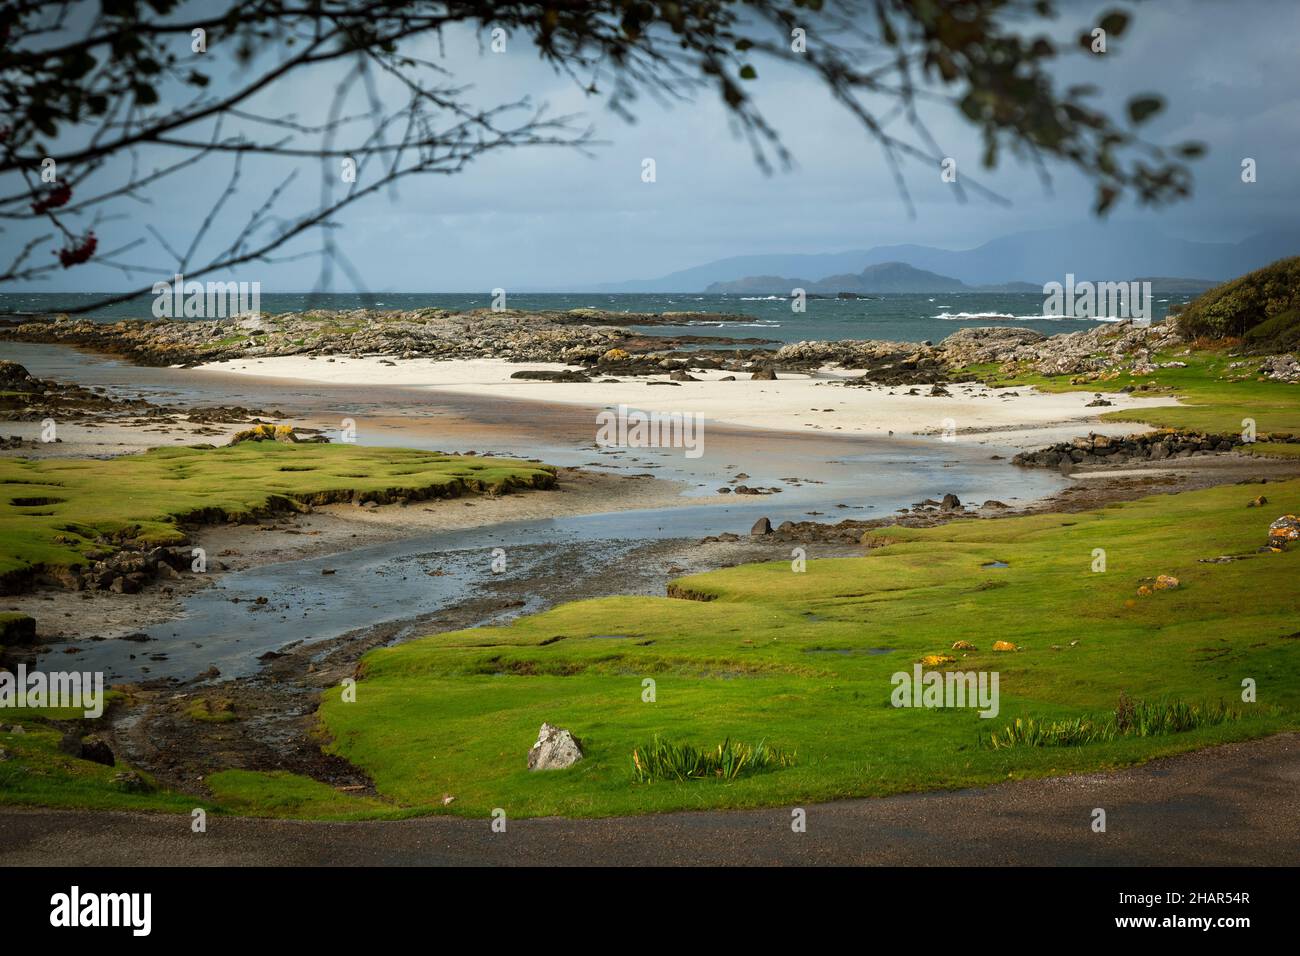 L'insenatura e la spiaggia di sabbia bianca di Portuairk, l'insediamento più occidentale sulla terraferma britannica che ha viste delle piccole isole, Scozia occidentale Foto Stock